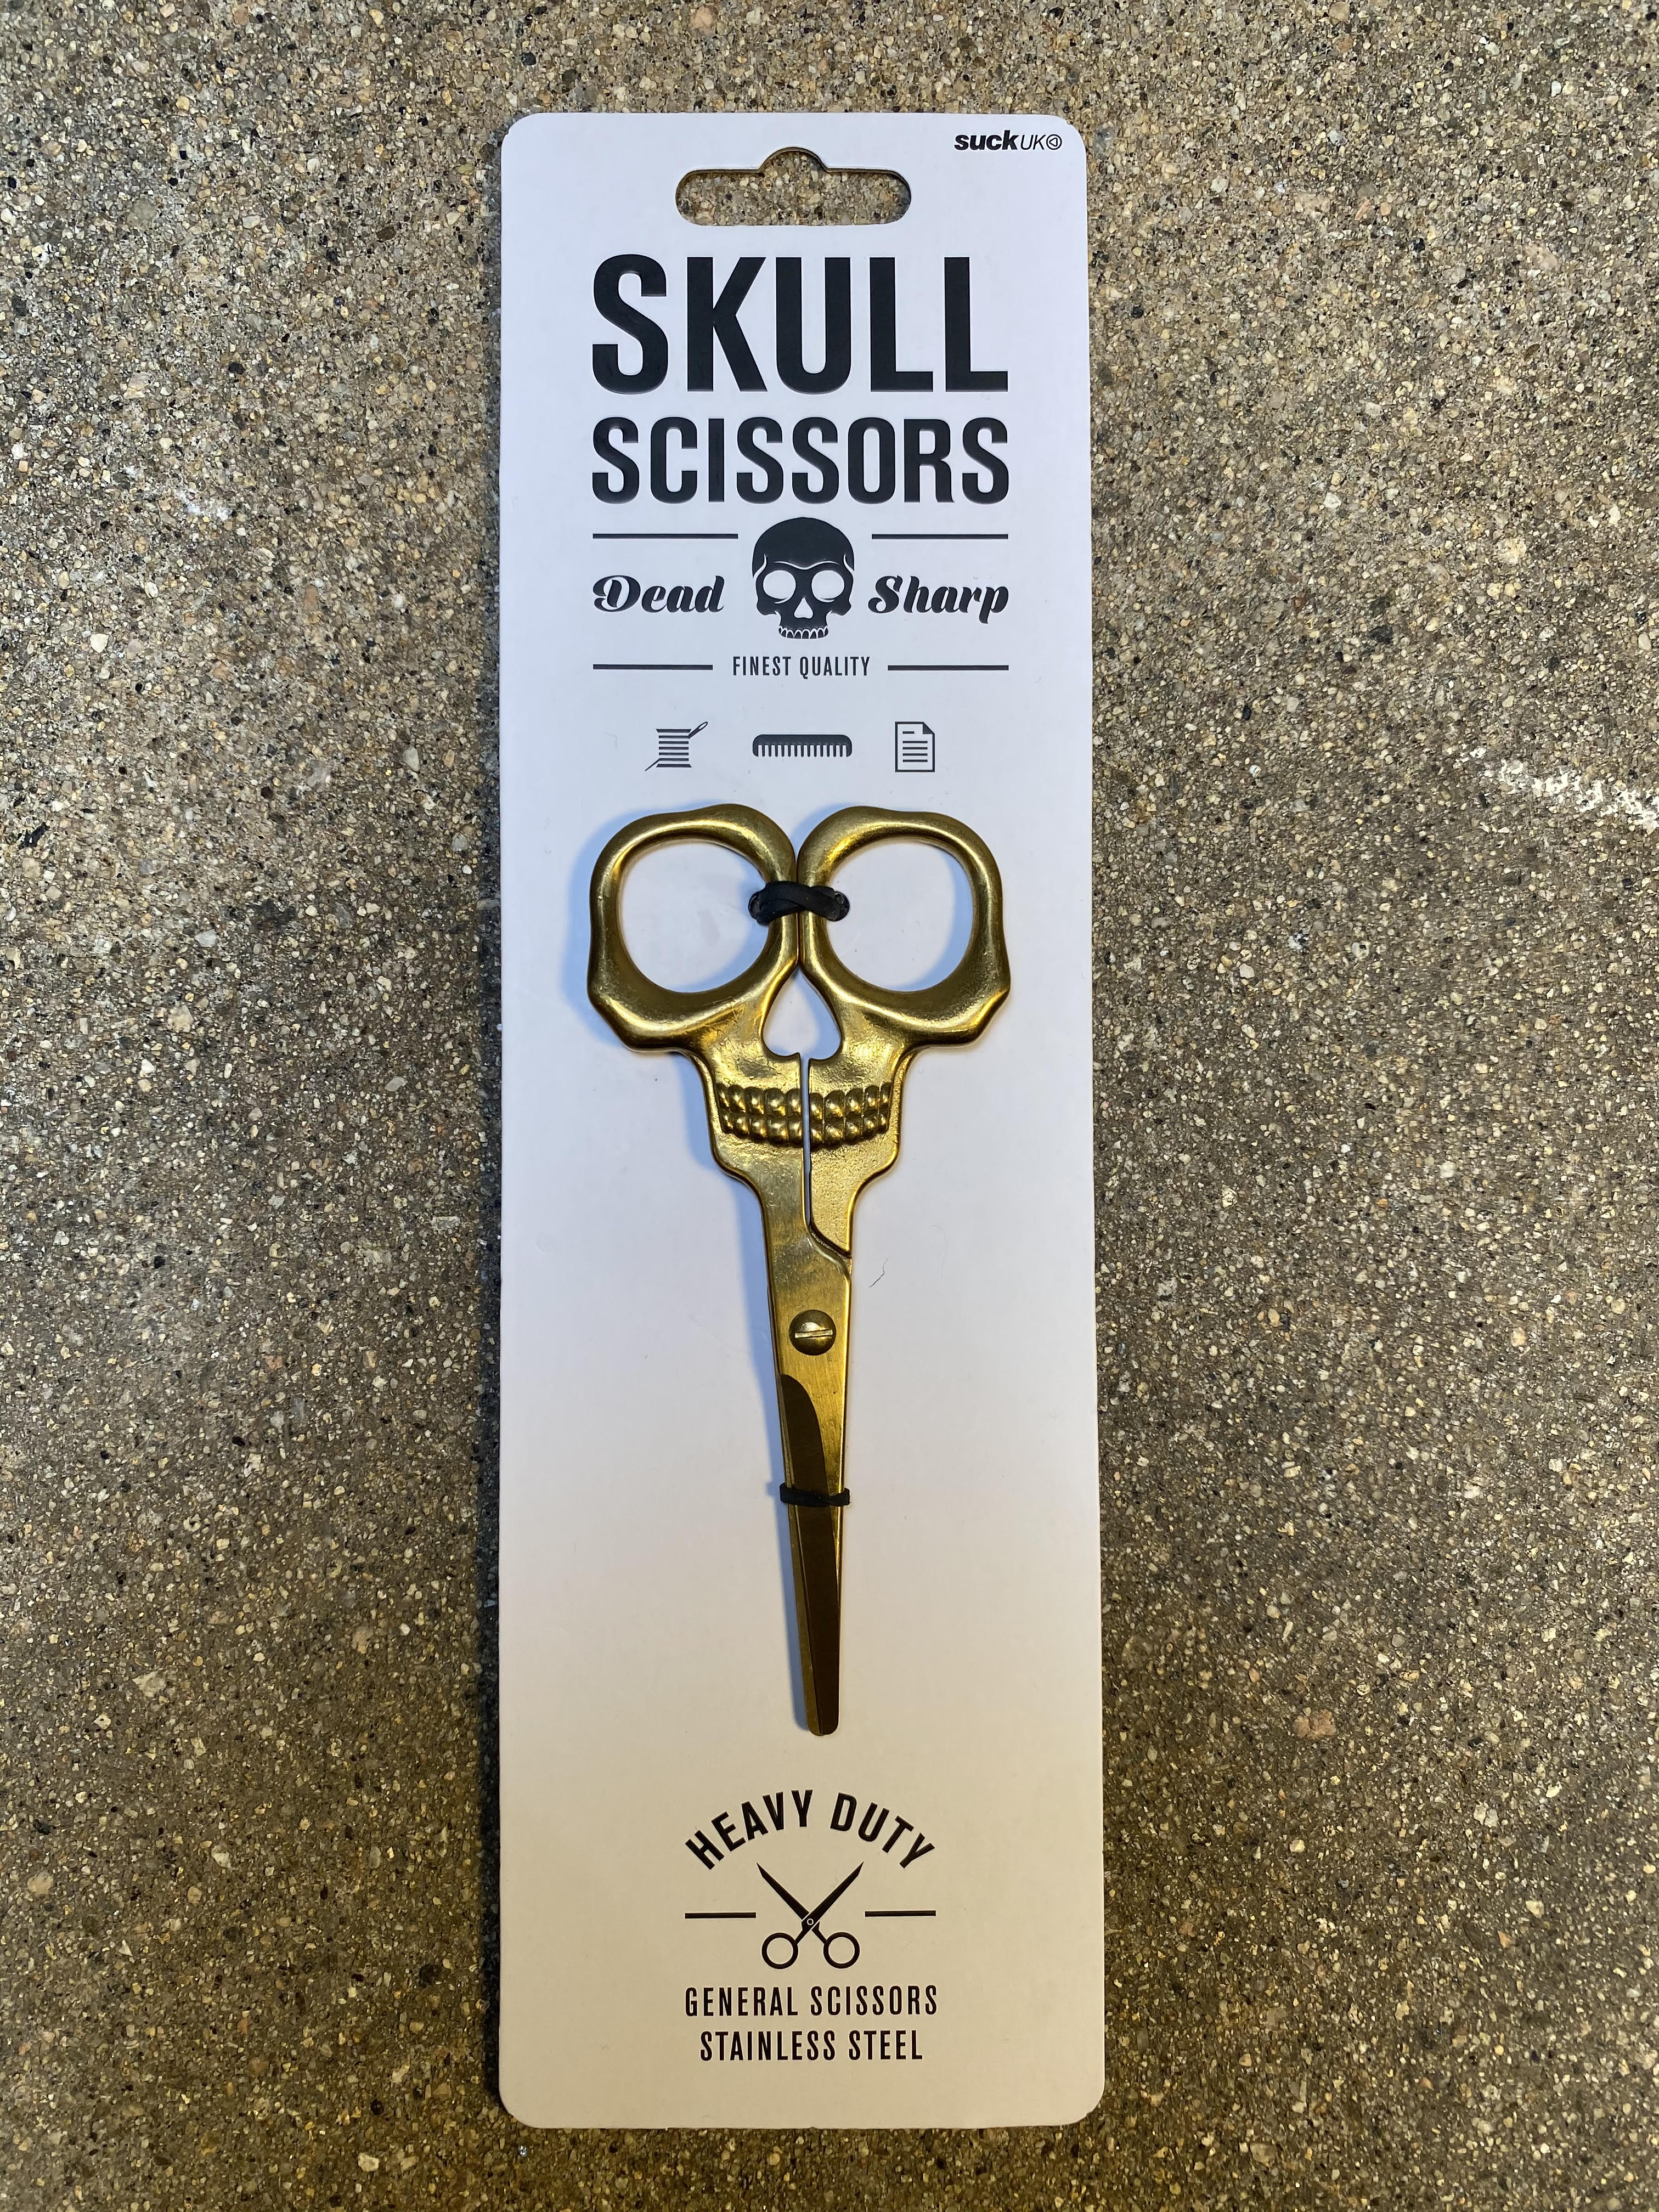 Skull Scissors – The Knitting Tree, L.A.